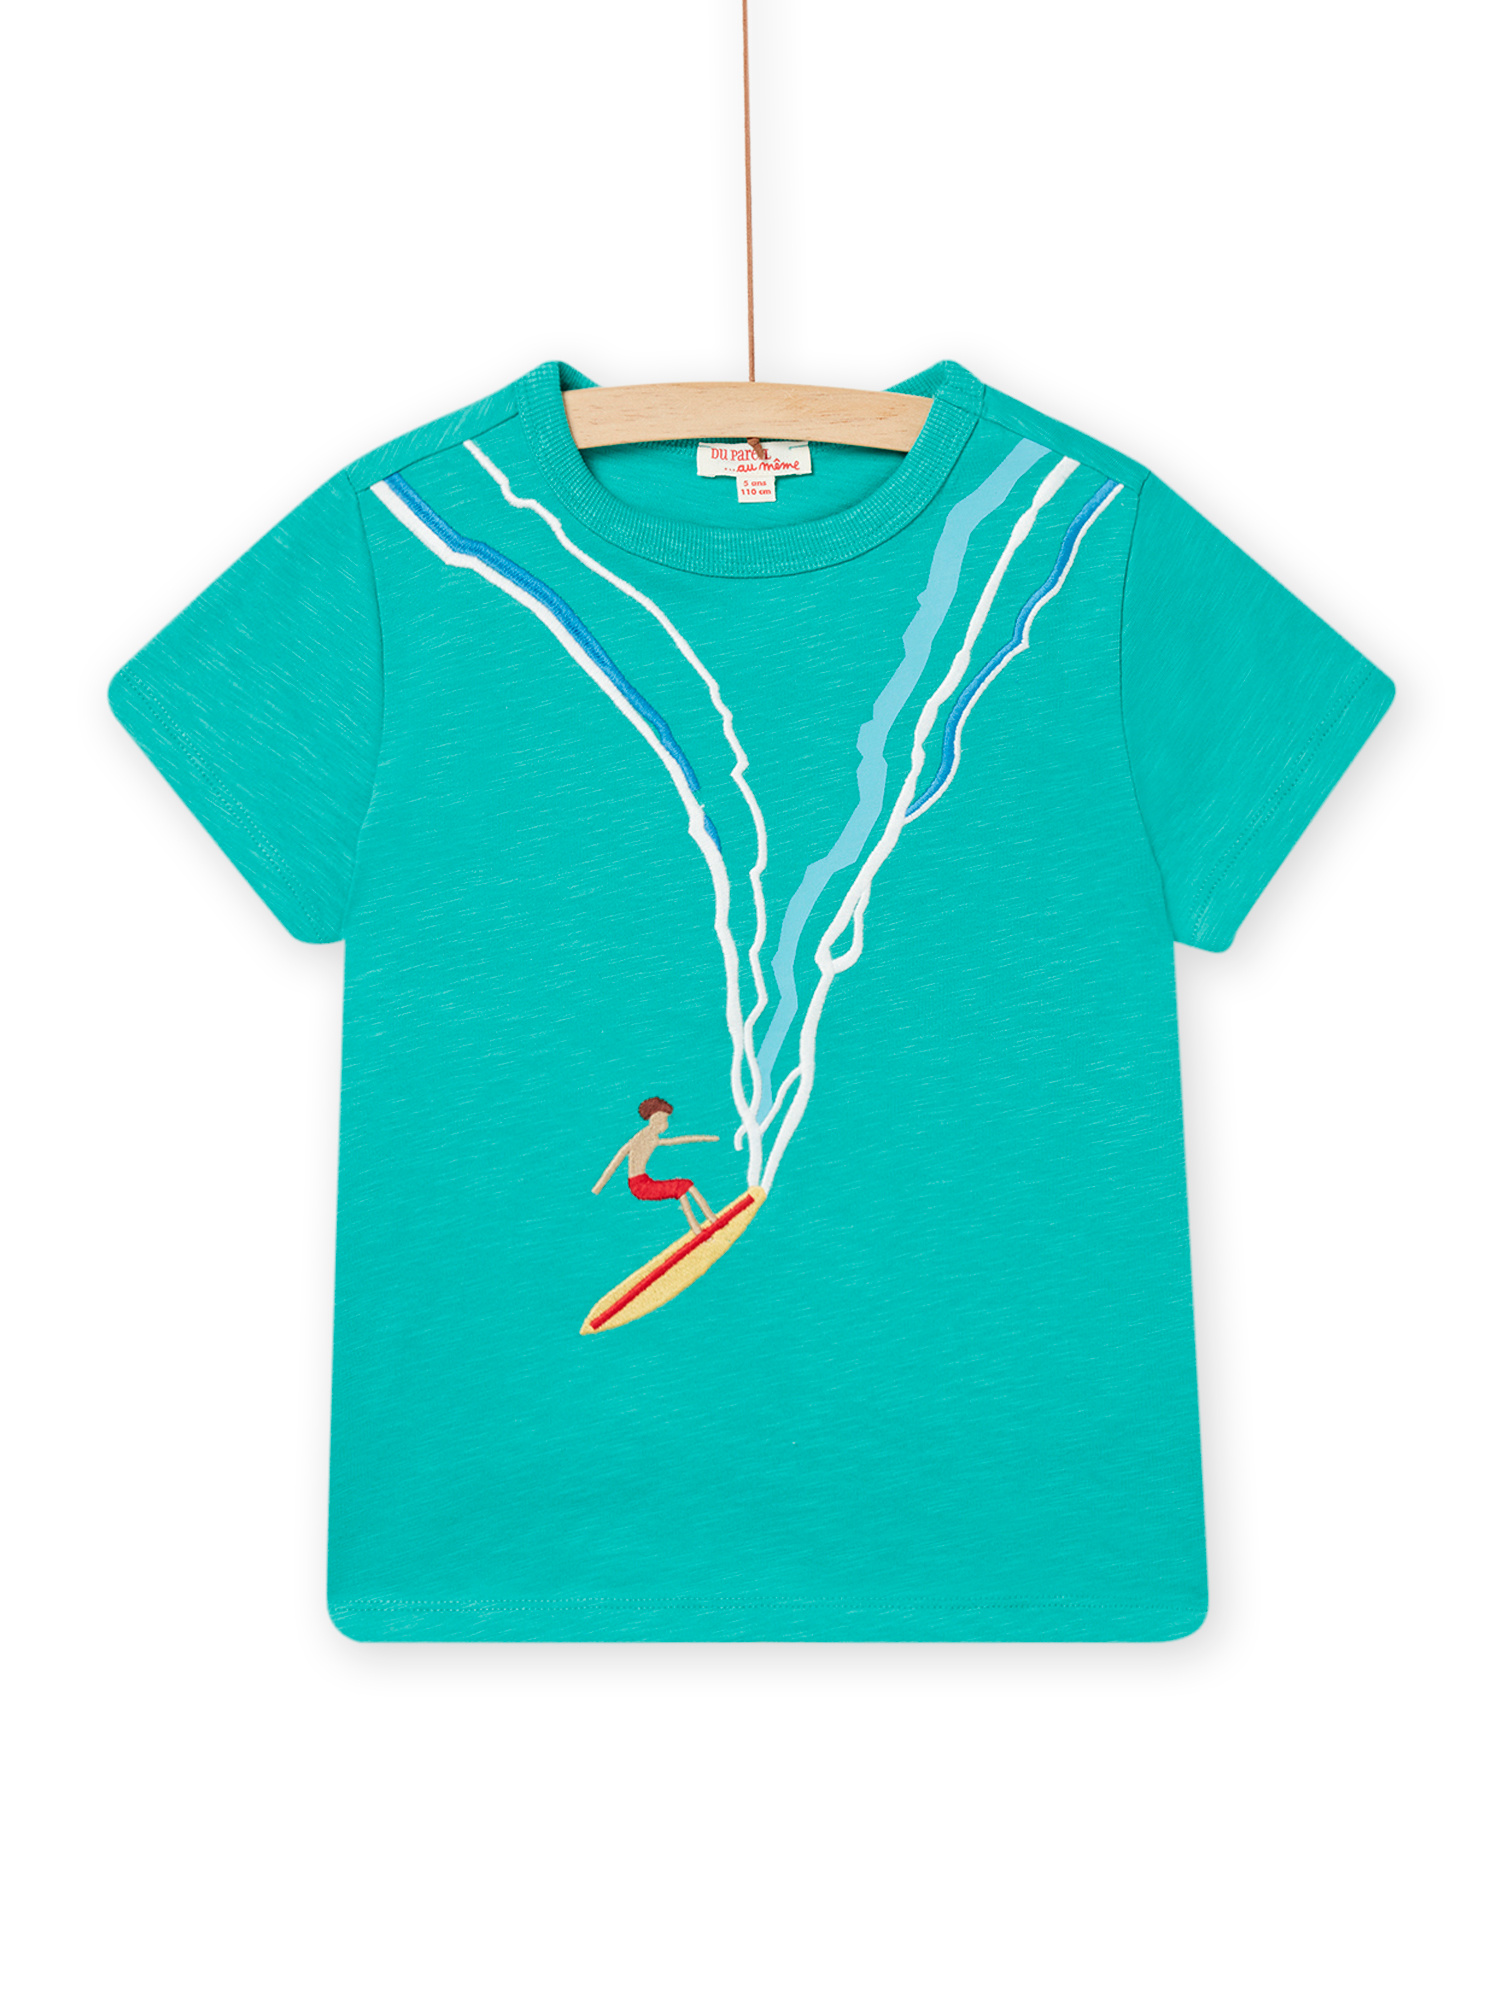 T-shirt Manches Courtes Bleu Clair À Motif Surfeur Enfant Garçon - 2A - Du Pareil Au Même